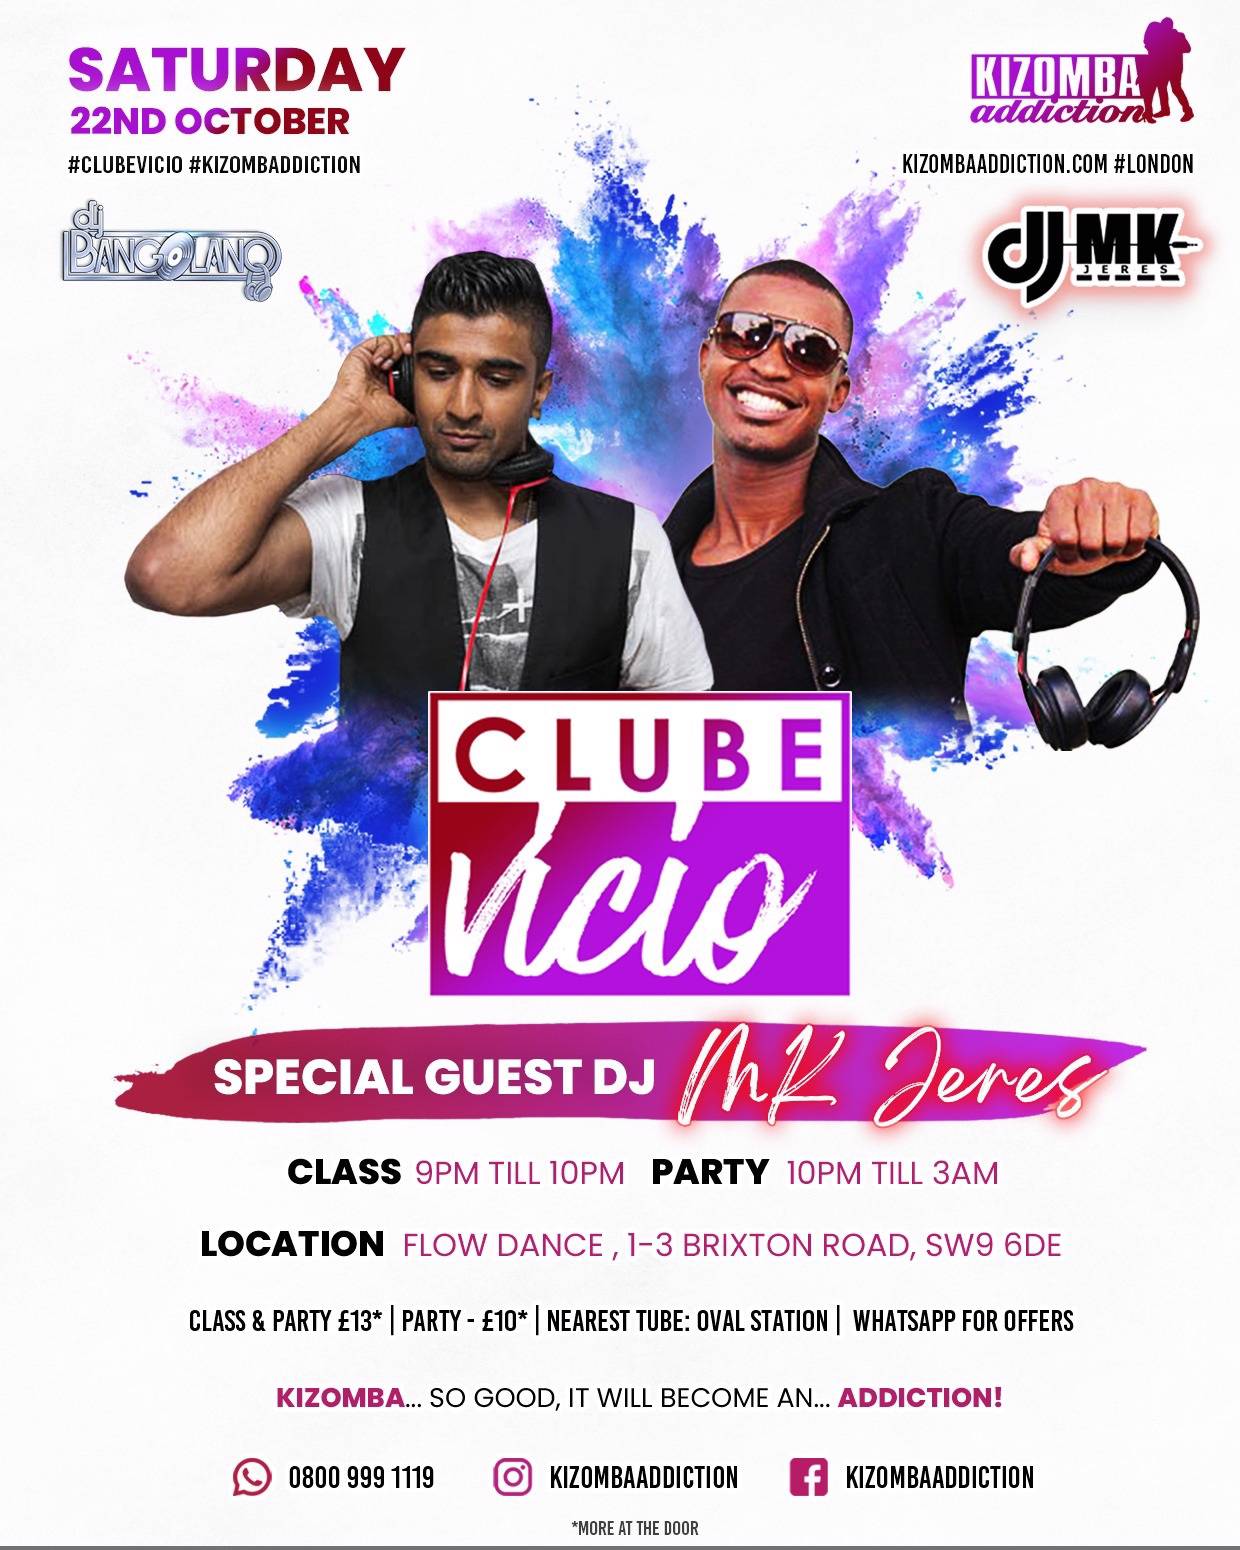 Cover Clube Vicio - Kizomba Party & Dance Classes on Saturday Nights